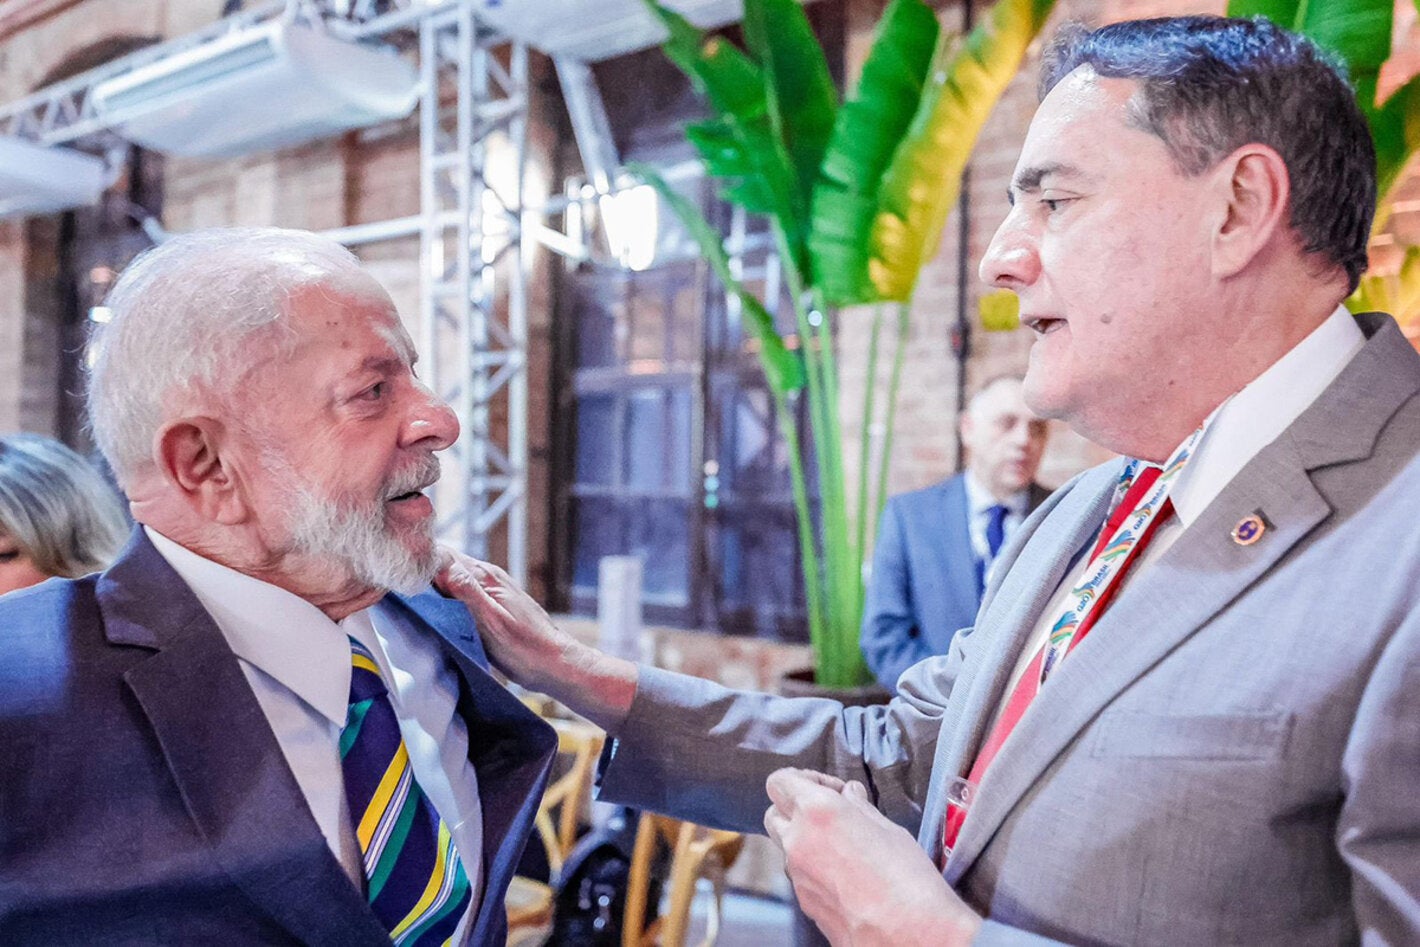 El Dr. Jarbas Barbosa conversa con el Presidente de Brasil, Luiz Inácio Lula da Silva